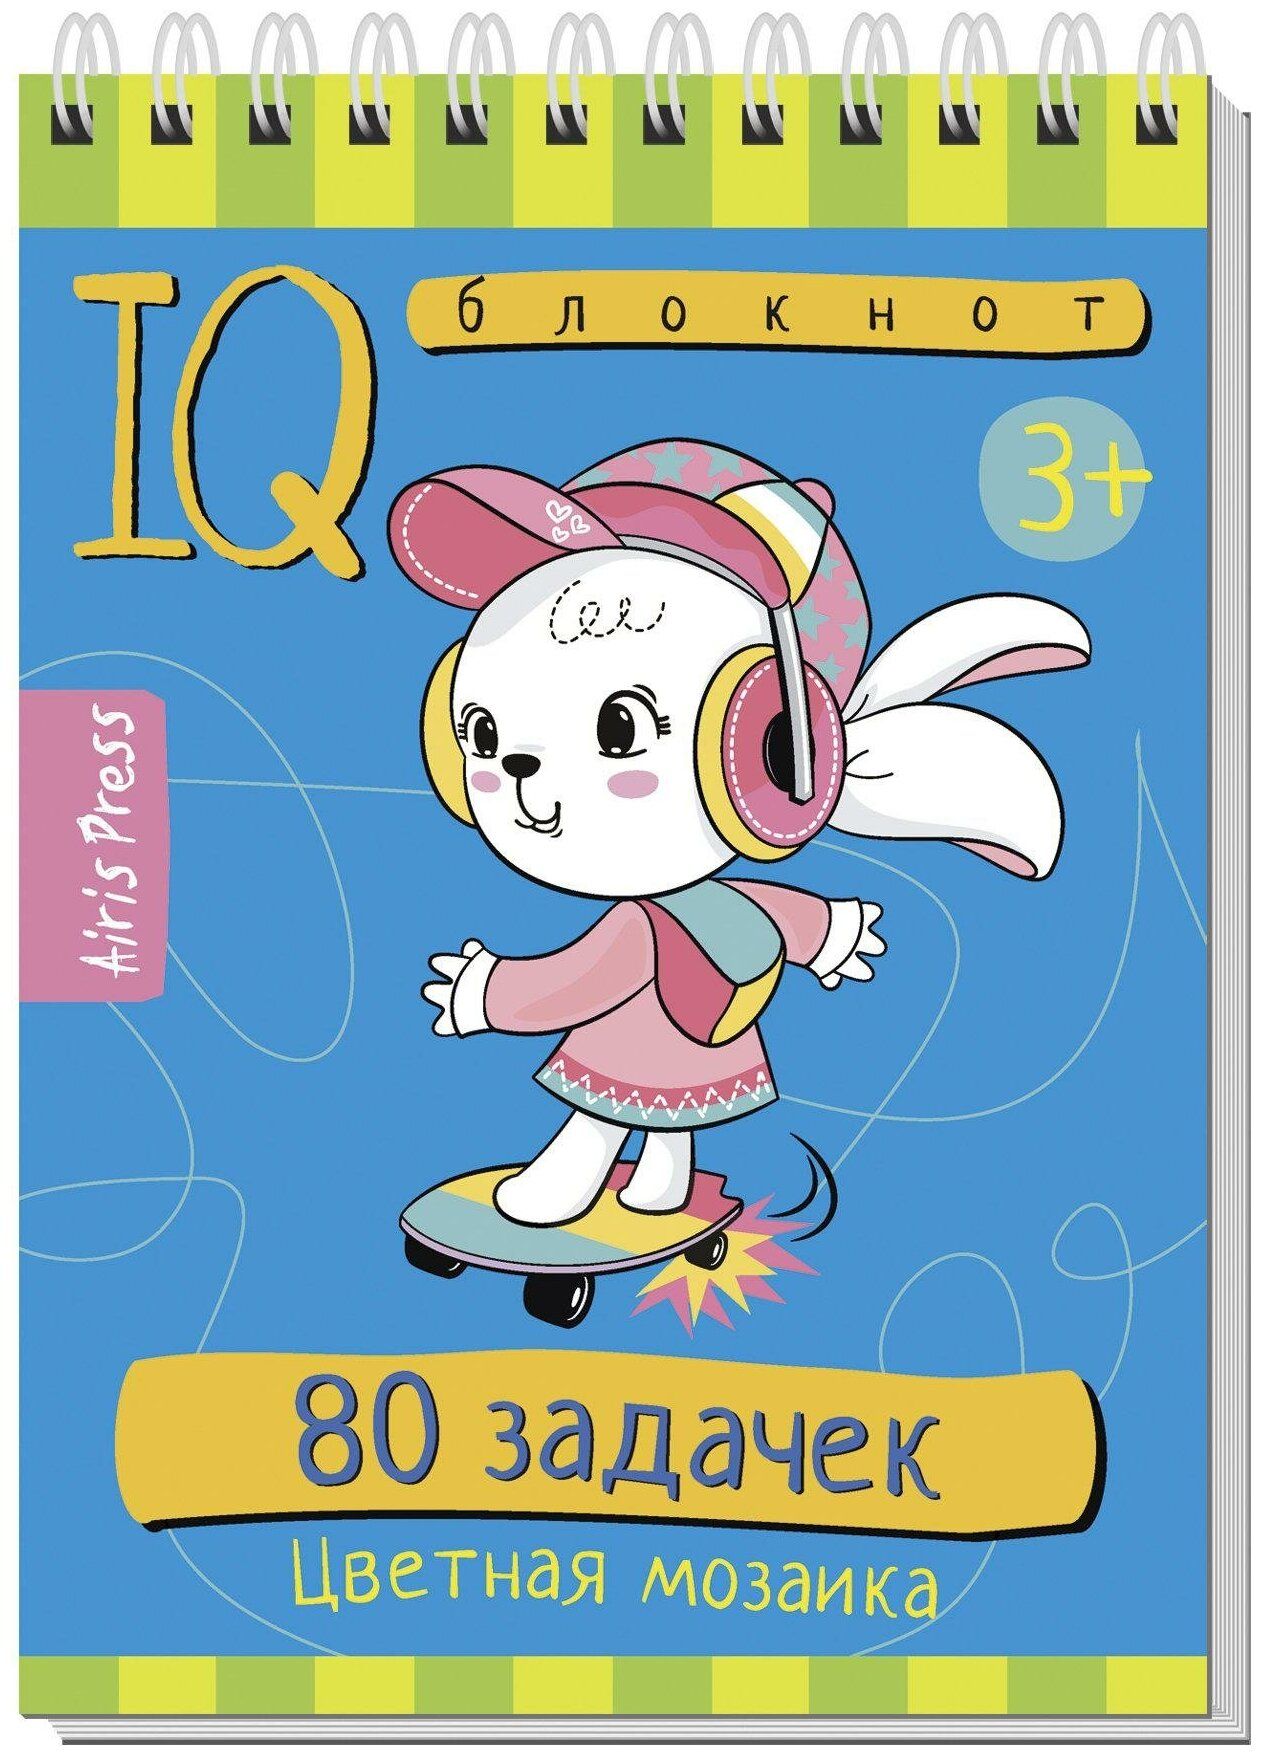 IQ блокнот Айрис-пресс 80 задачек. Цветная мозаика 3+ арт.28401 настольная развивающая игра iq карты бельчонок tm айрис пресс